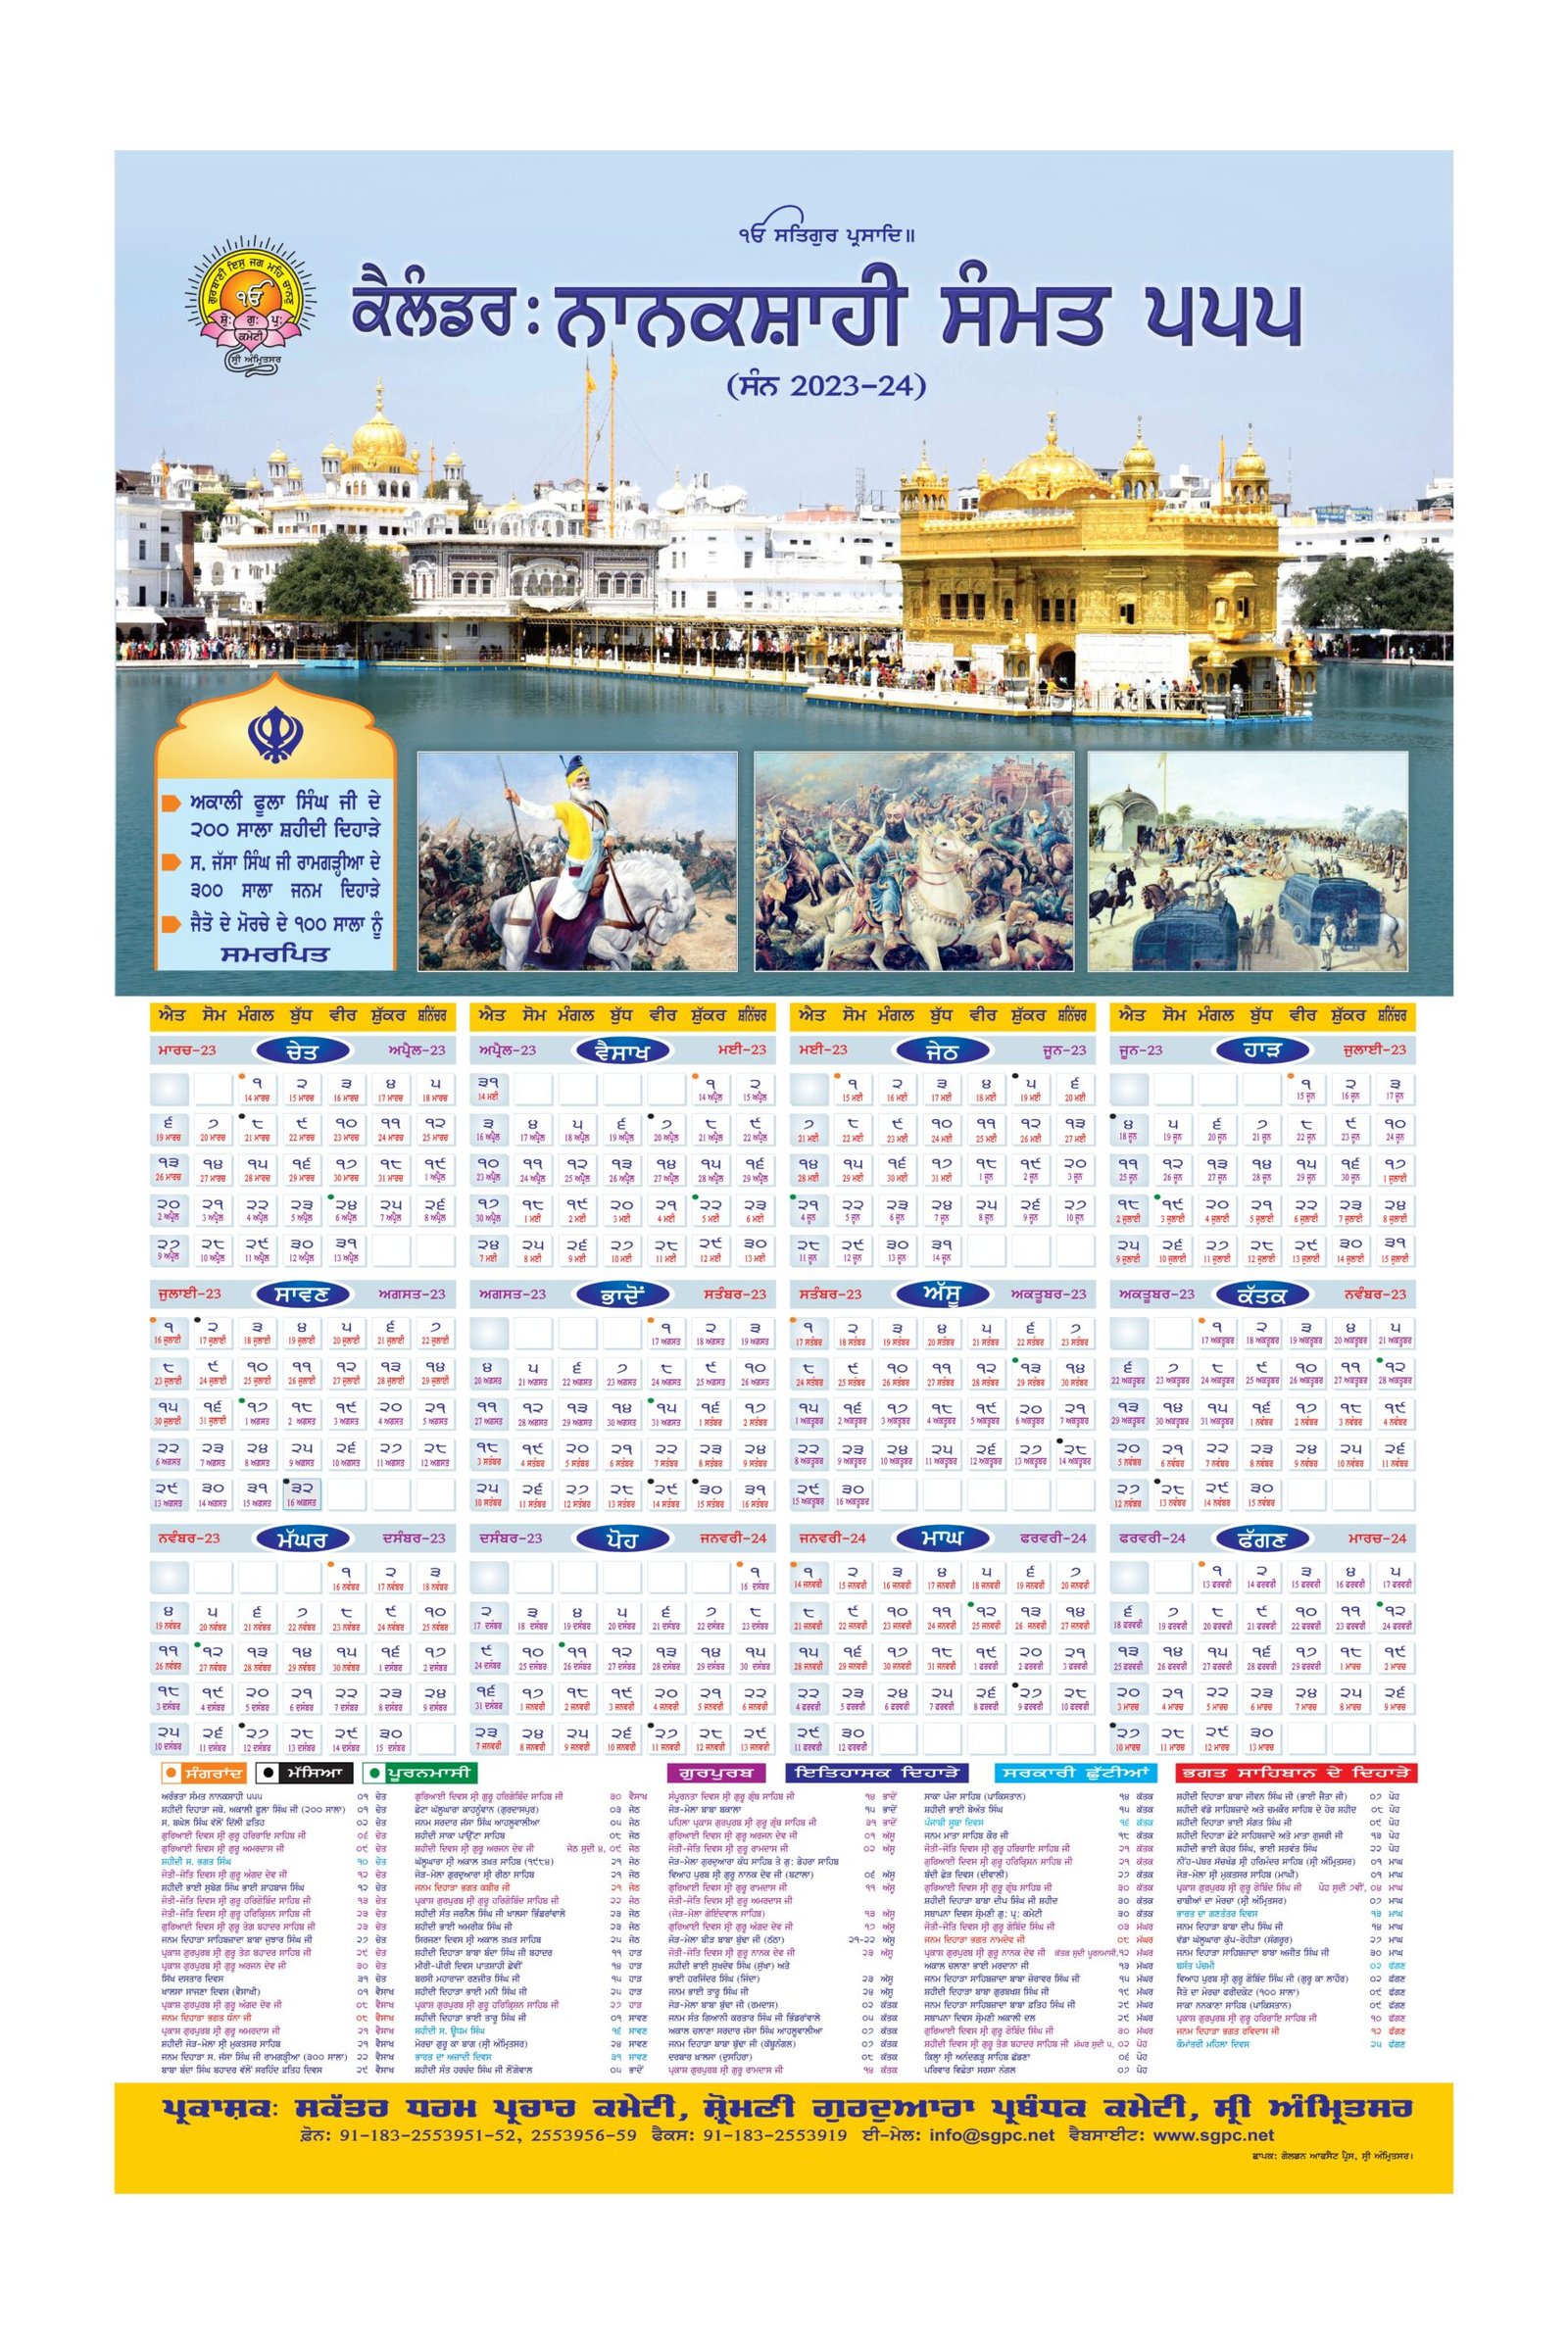 Nanaksahi calendar